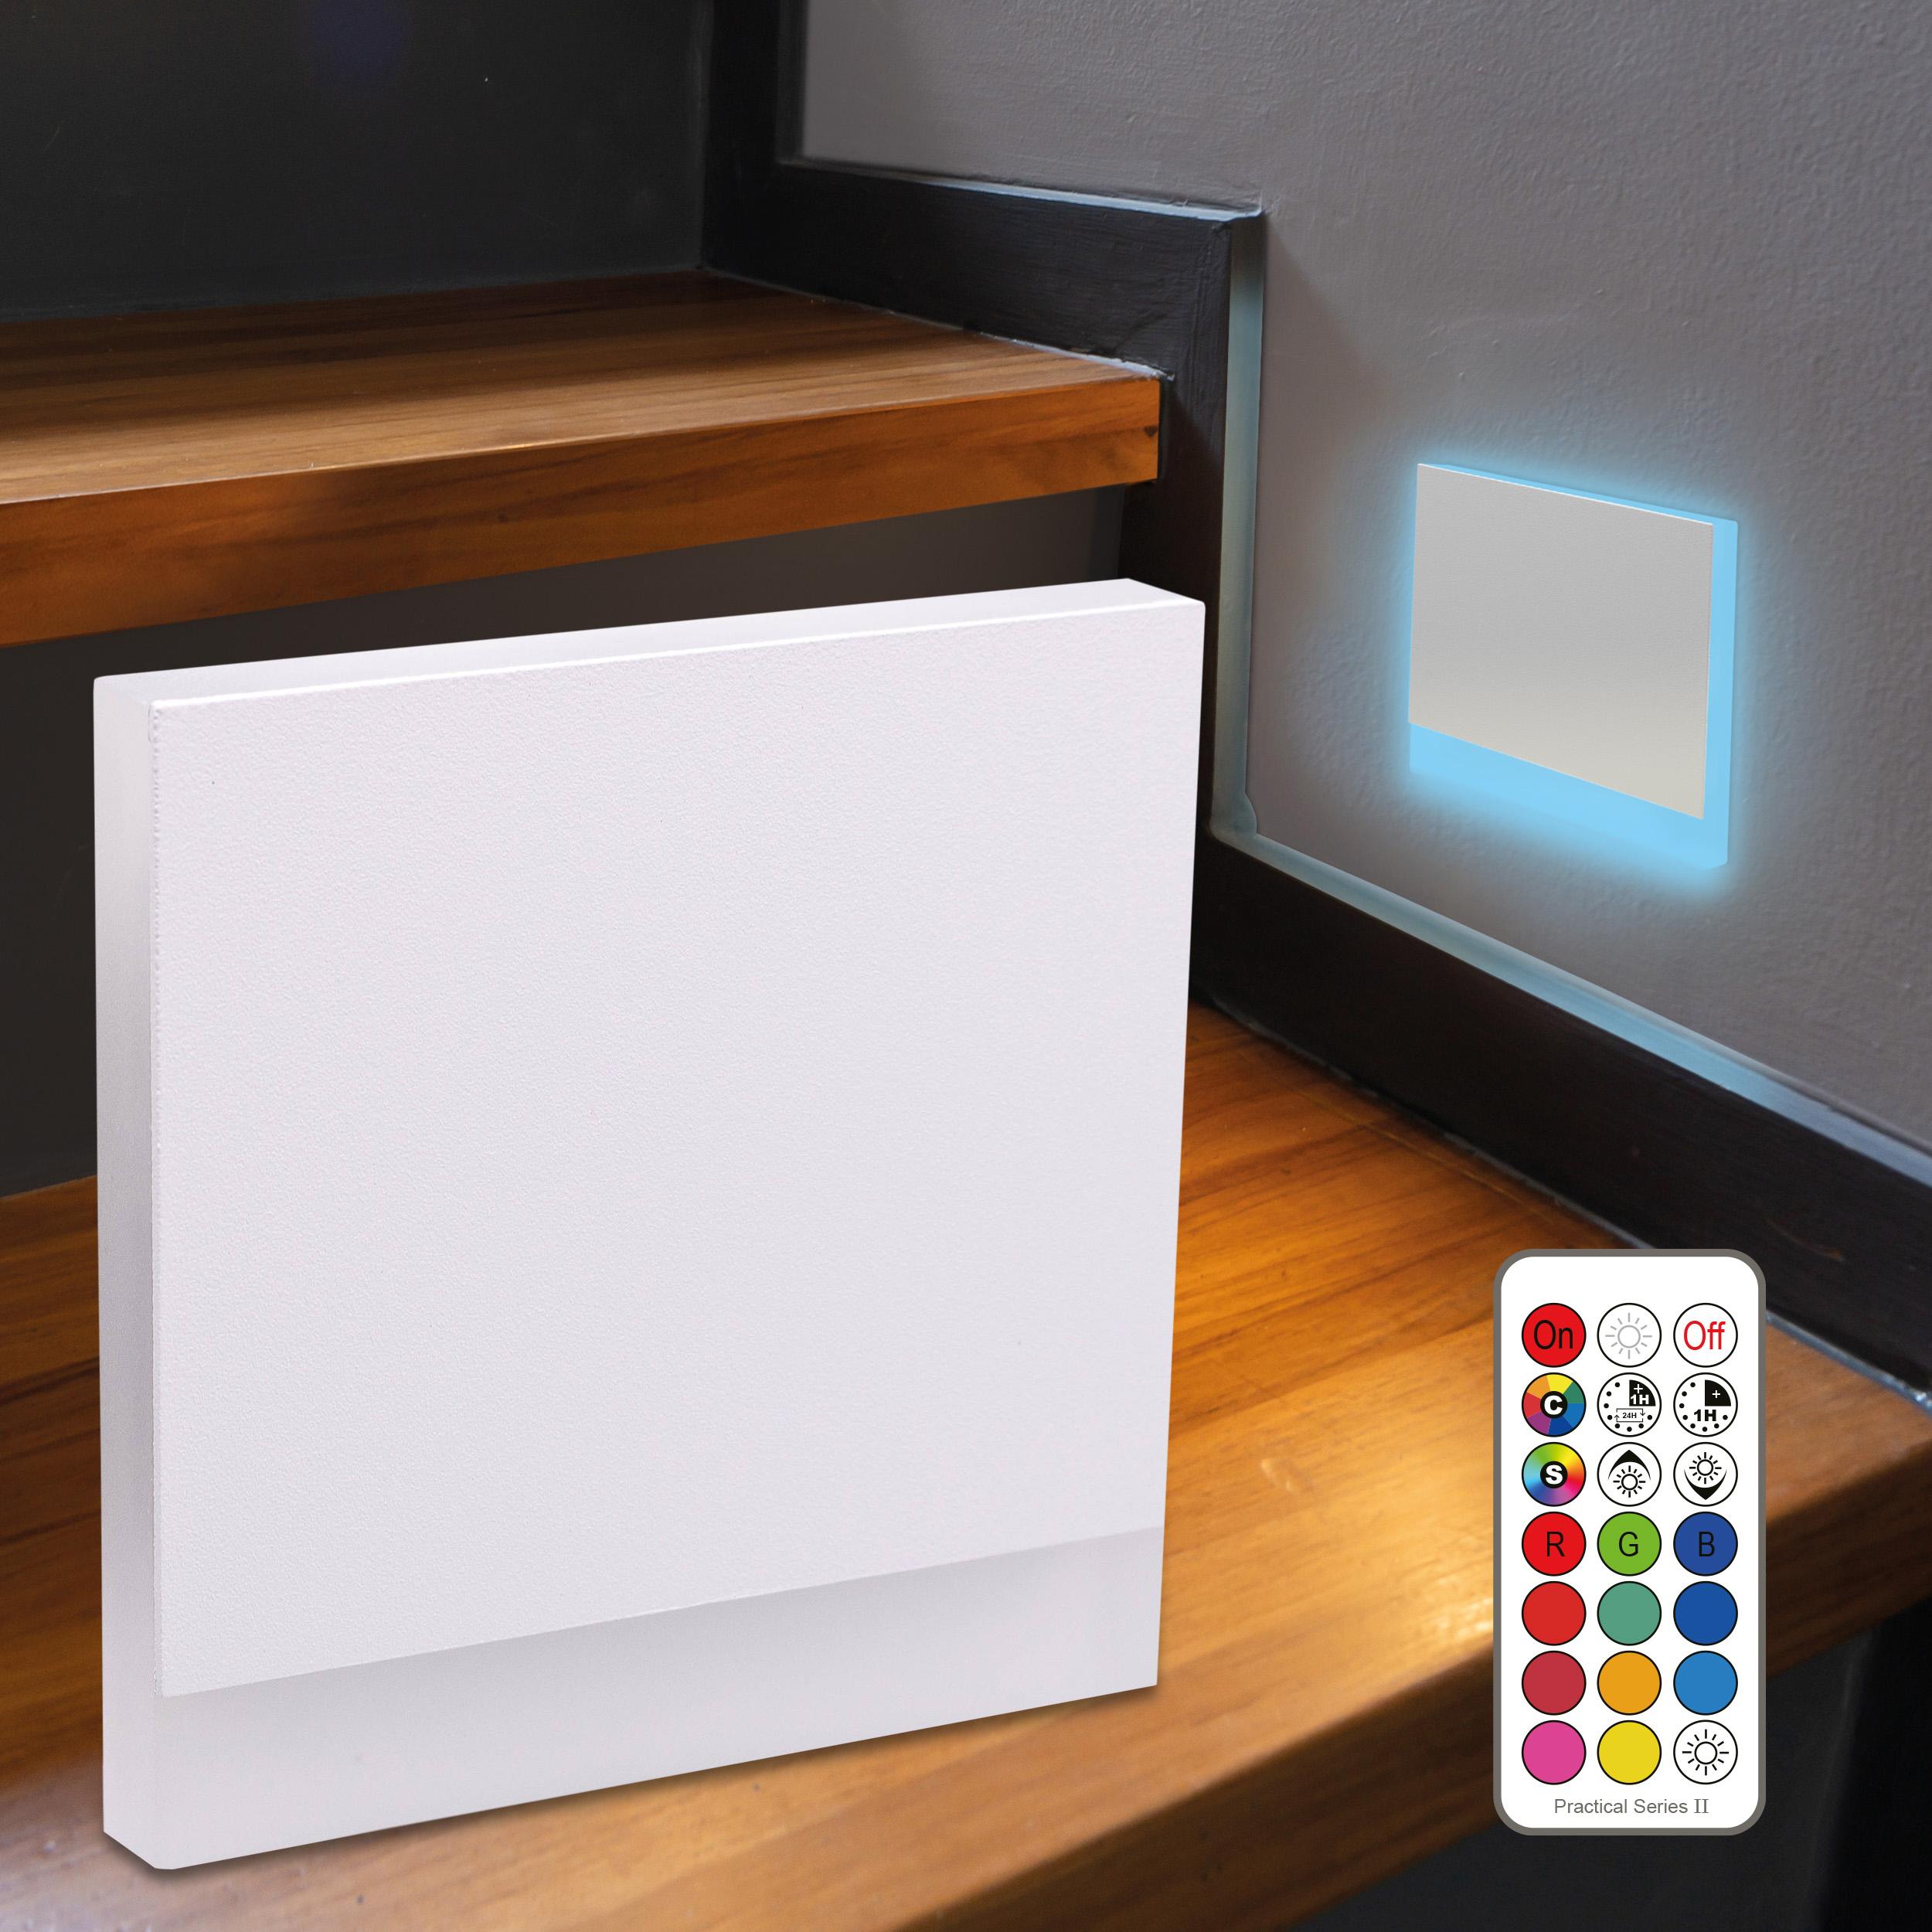 LED Treppenleuchte eckig weiß - Lichtfarbe: RGB Kaltweiß 3W - Lichtaustritt: Orbis